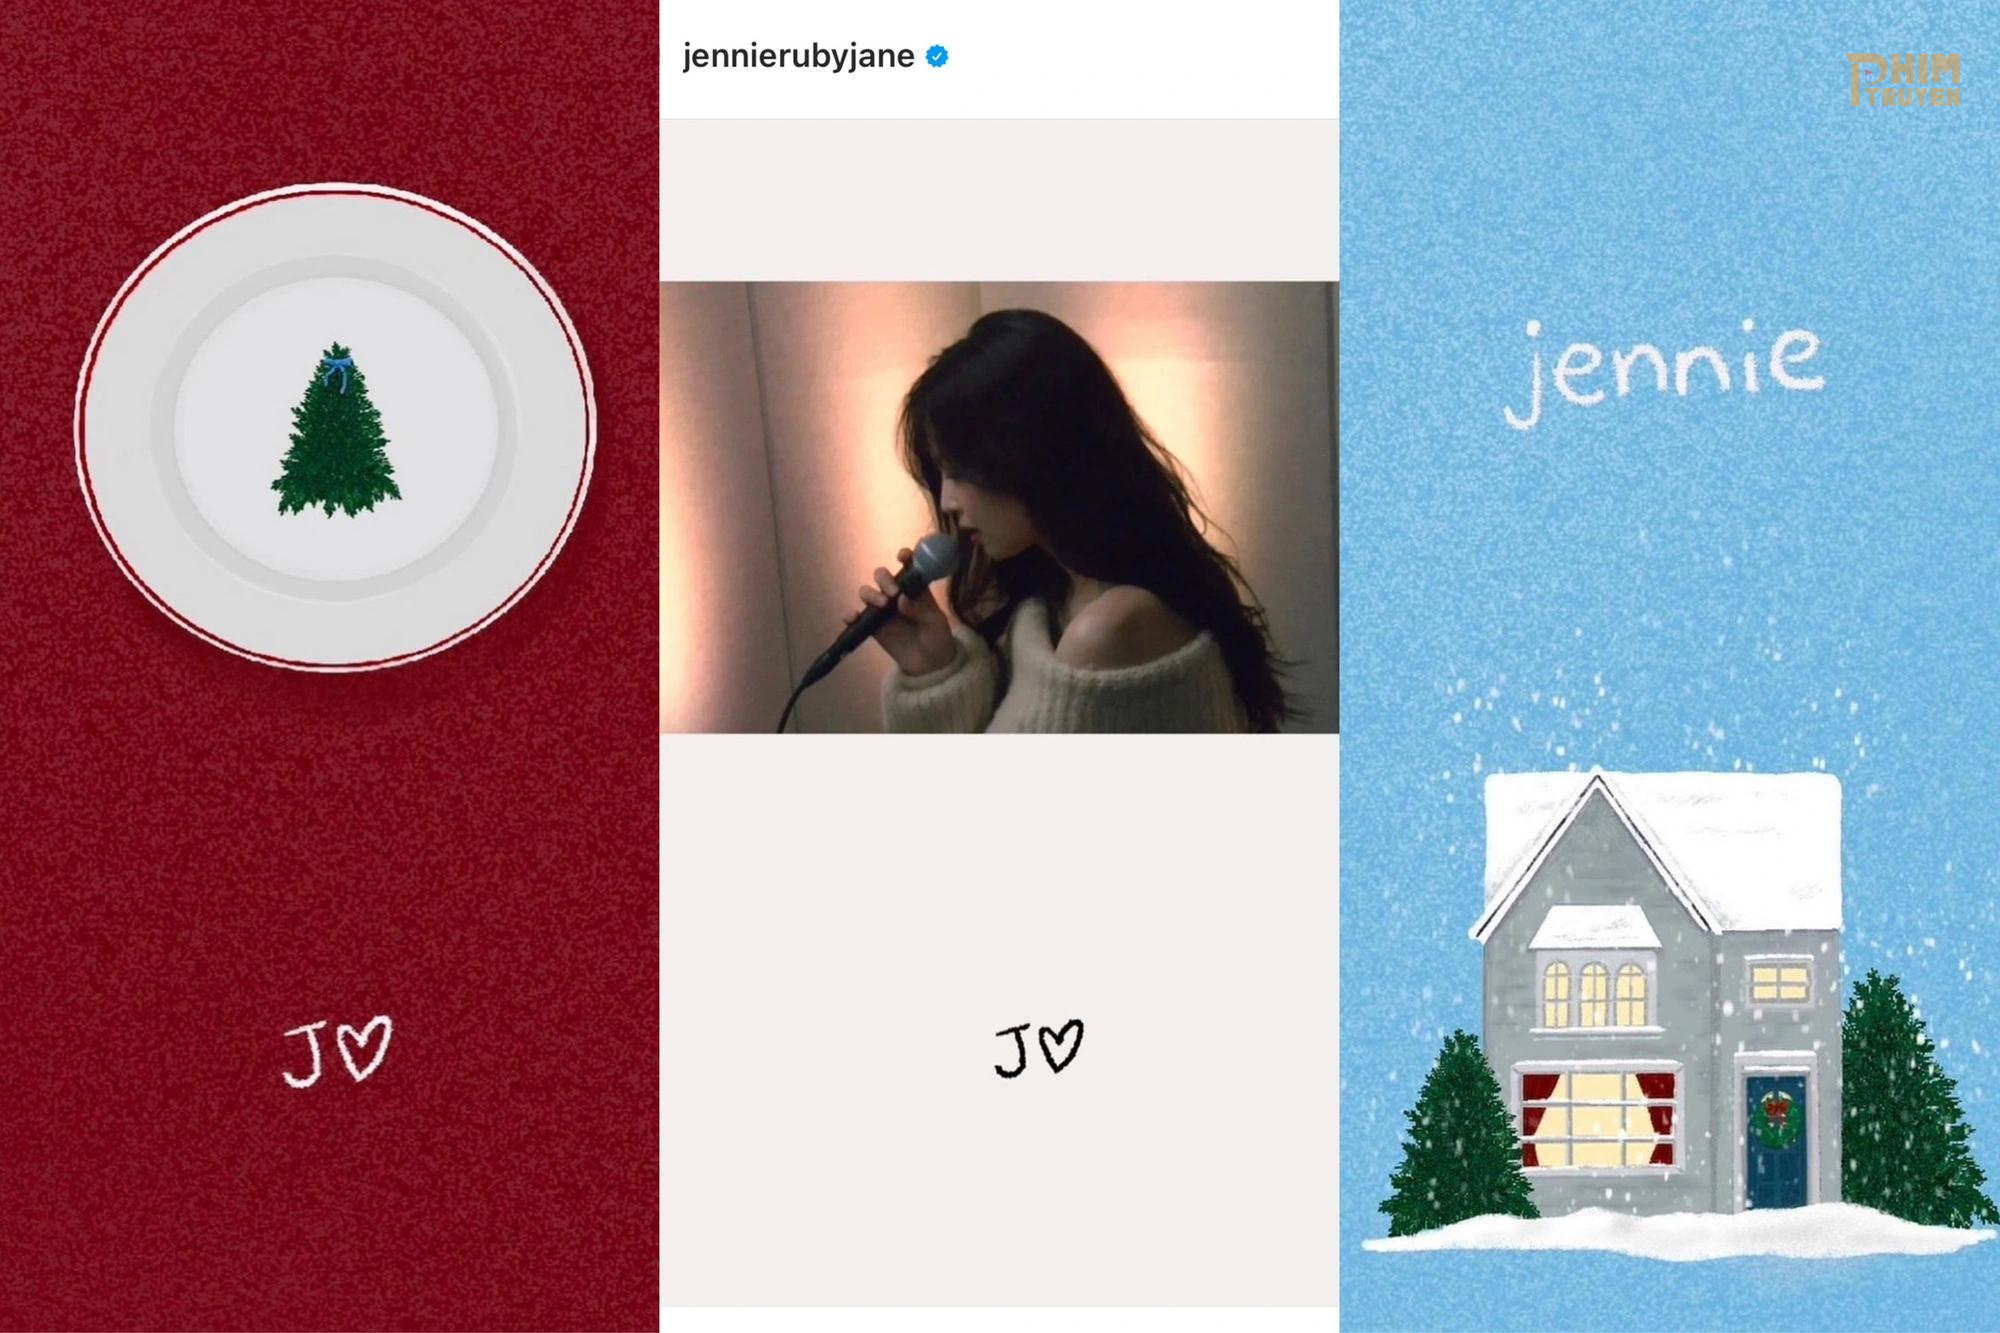 Món quà Giáng sinh được Jennie chuẩn bị chỉn chu, từ phần hình ảnh đến âm thanh